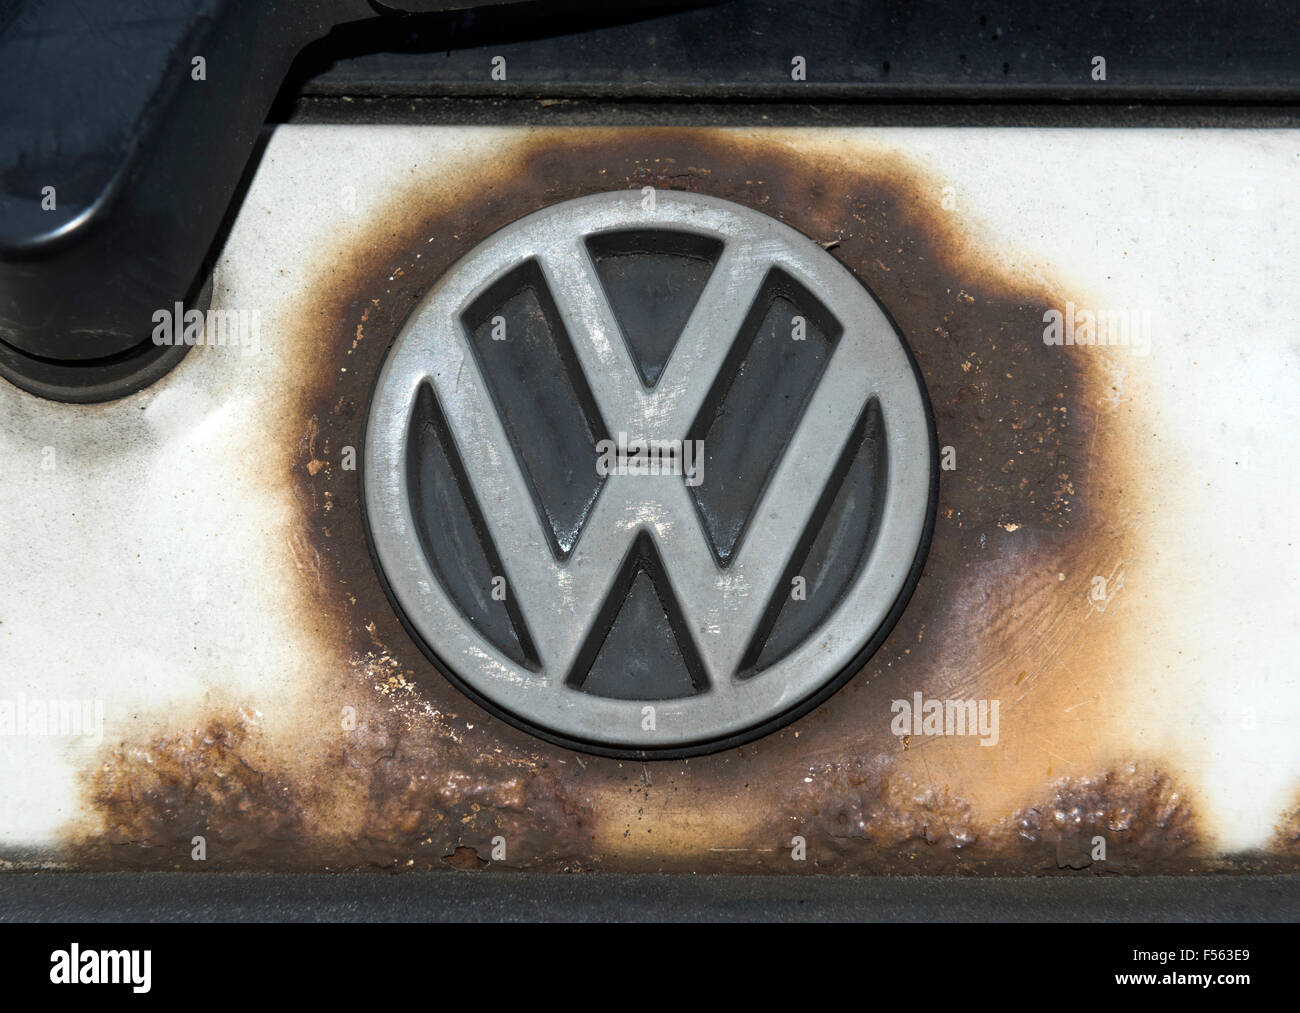 16.05.2015, Berlin, Berlin, Allemagne - emblème VW Volkswagen AG blunt. EBS150516D724CAROEX.JPG - pas à vendre dans la région de G E R M A N Y, A U S T R I A, S W I T Z E R L A N D [communiqué de modèle : NON APPLICABLE, DES BIENS : NON (c) agence photo caro / http://www.caro-images.pl, info@carofoto.pl Schulz, - en cas d'utilisation de la photo pour les non-fins journalistiques, veuillez contacter l'agence - l'image est l'objet d'image !] Banque D'Images